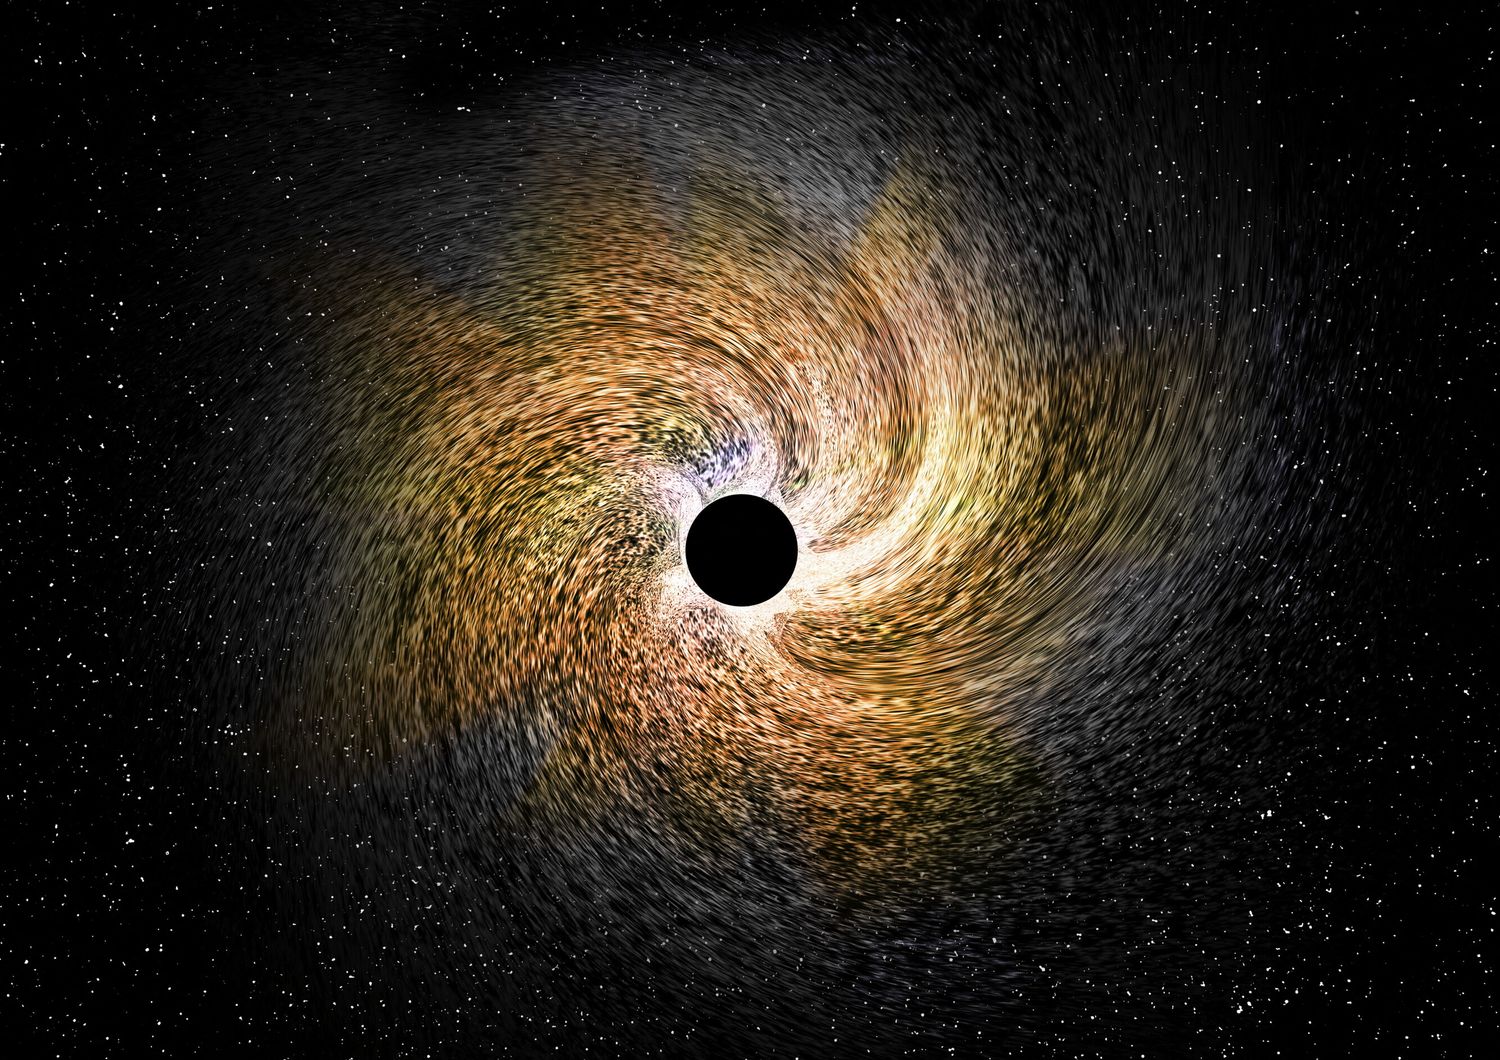 Rappresentazione grafica di un buco nero